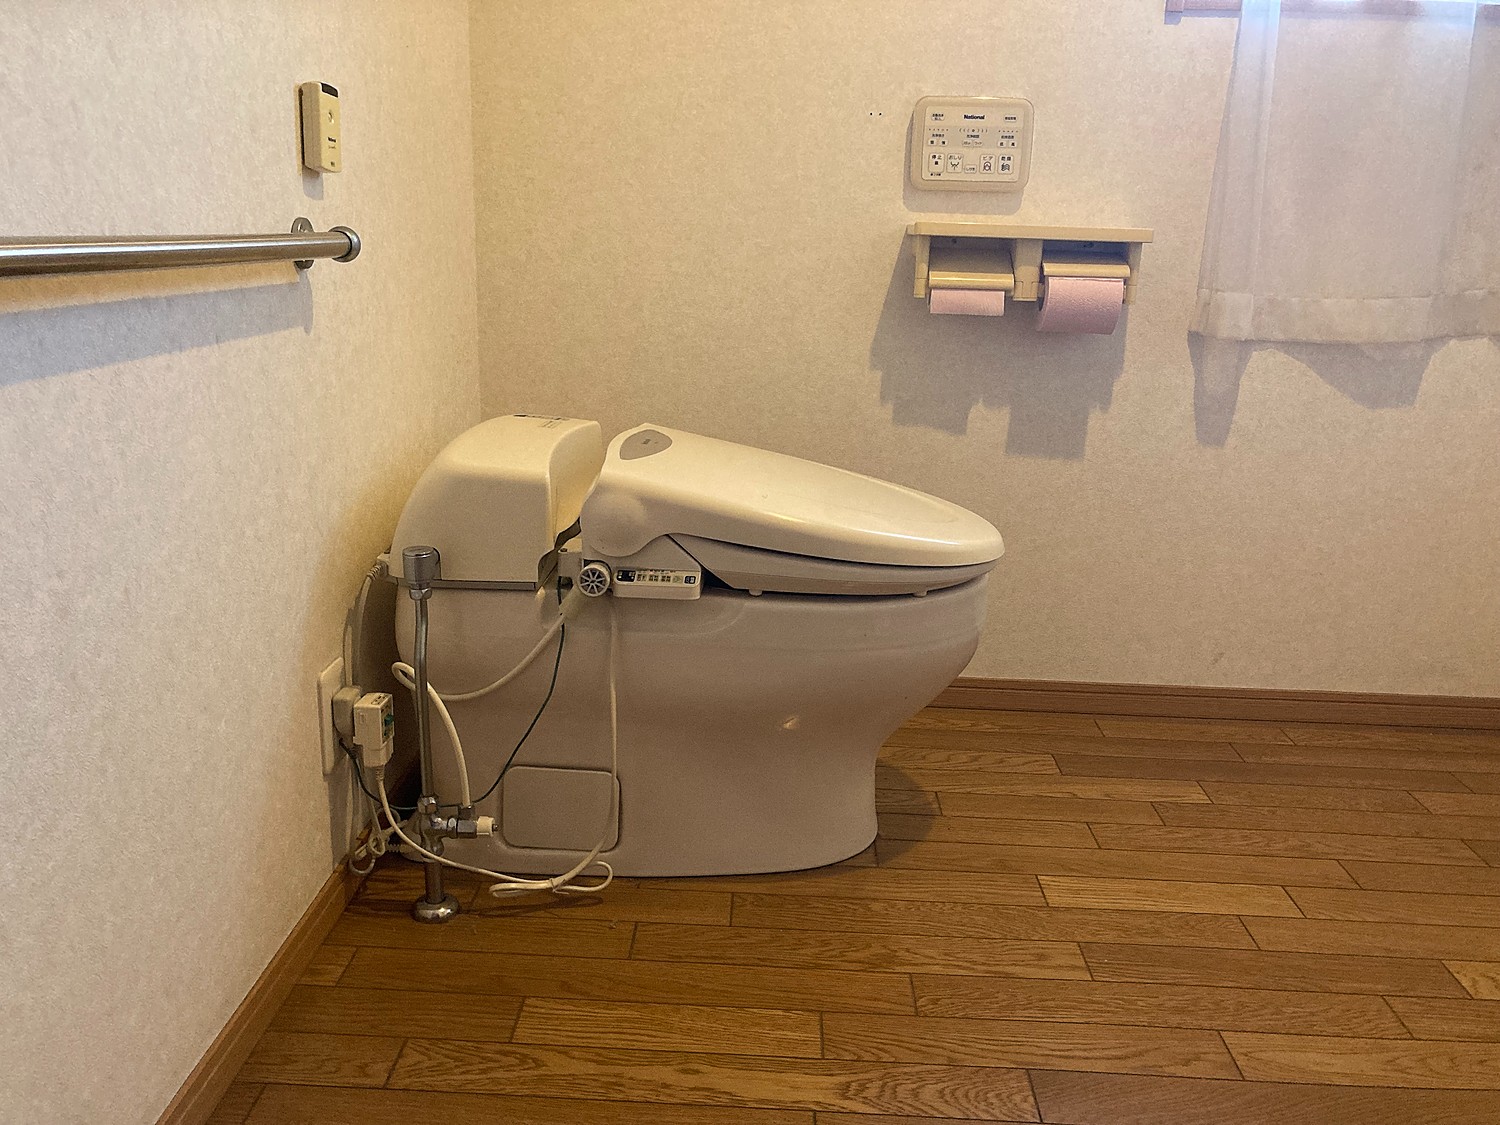 小便器自動洗浄装置 トイレオプション品 後付けタイプ LIXIL OKU-AT100SDJ オートフラッシュU